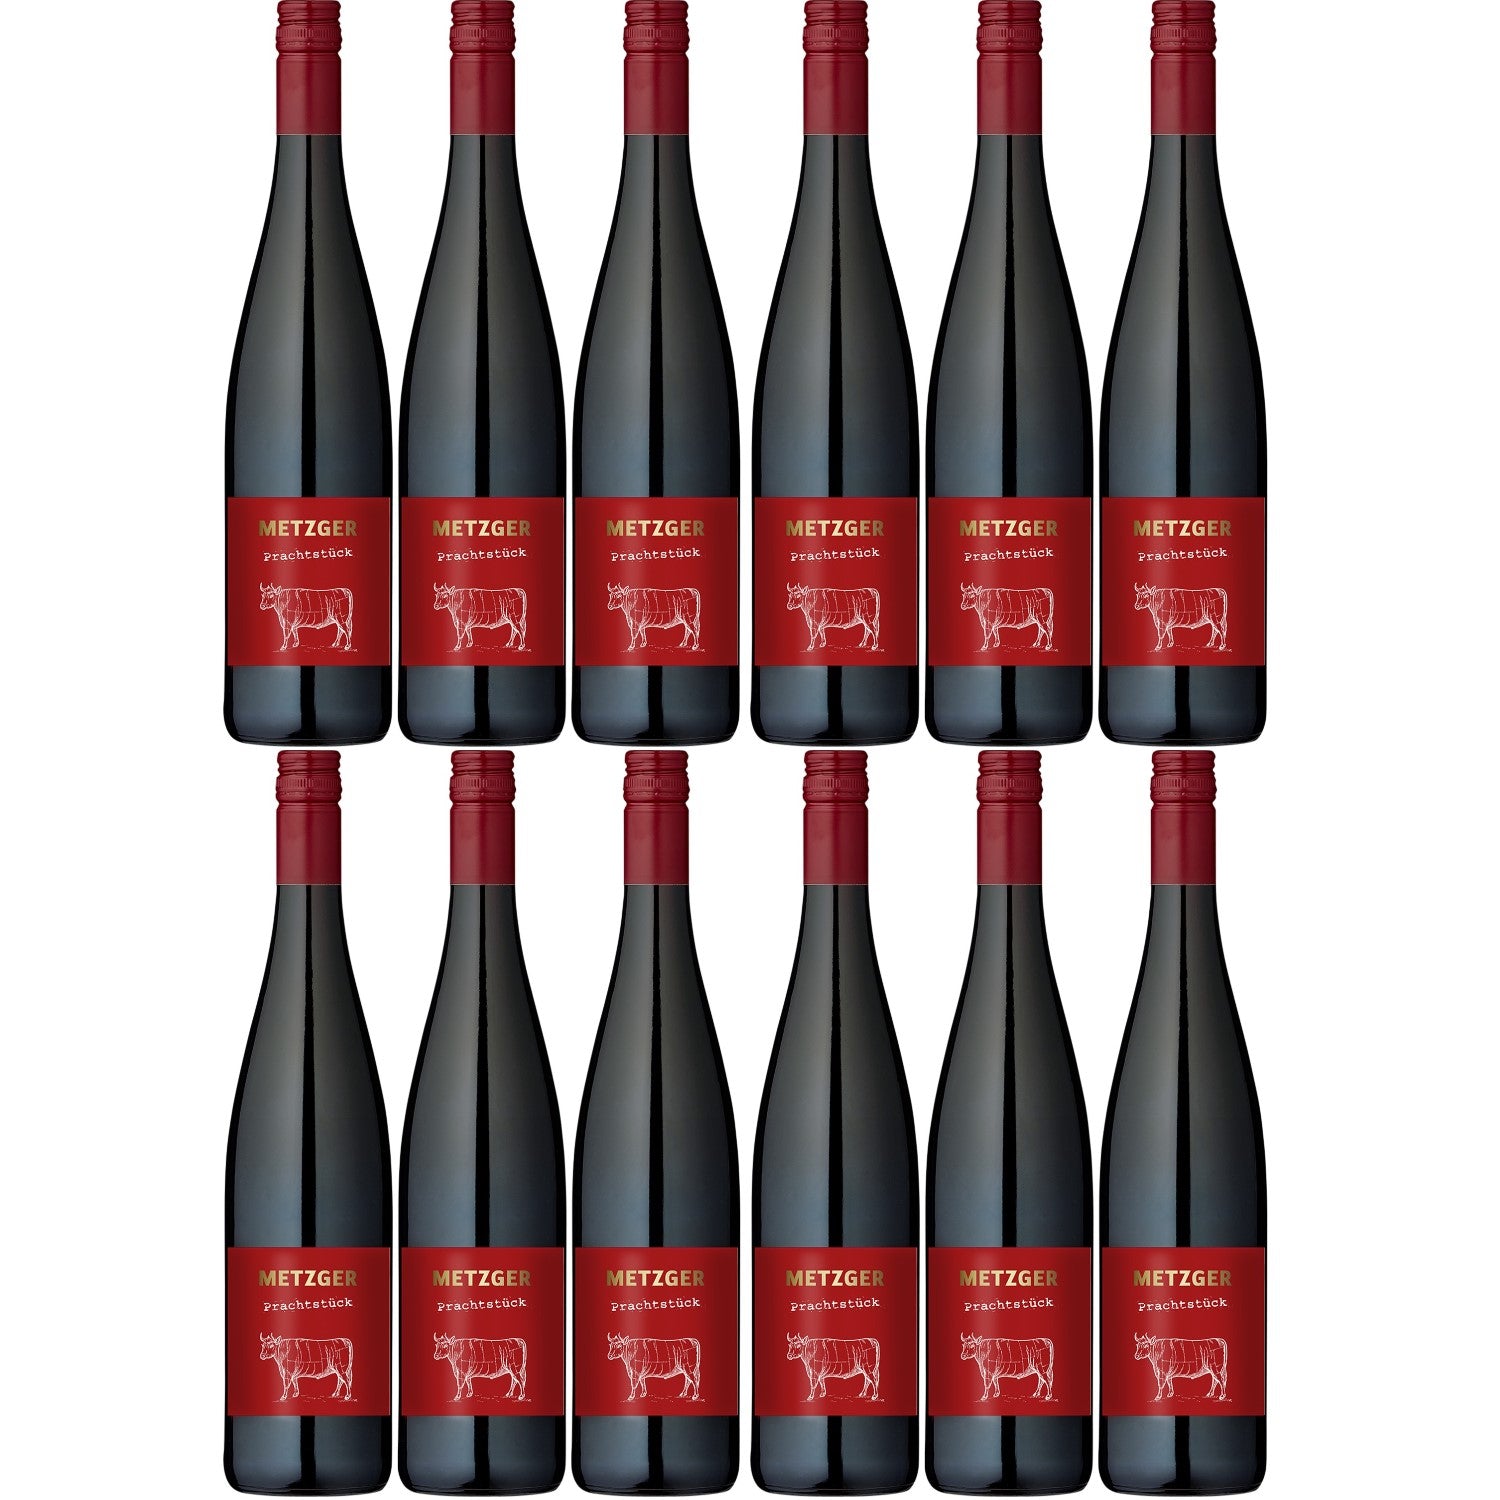 Metzger Prachtstück Cuvée Rotwein Wein trocken KuhbA Deutschland (12 x 0.75l) - Versanel -